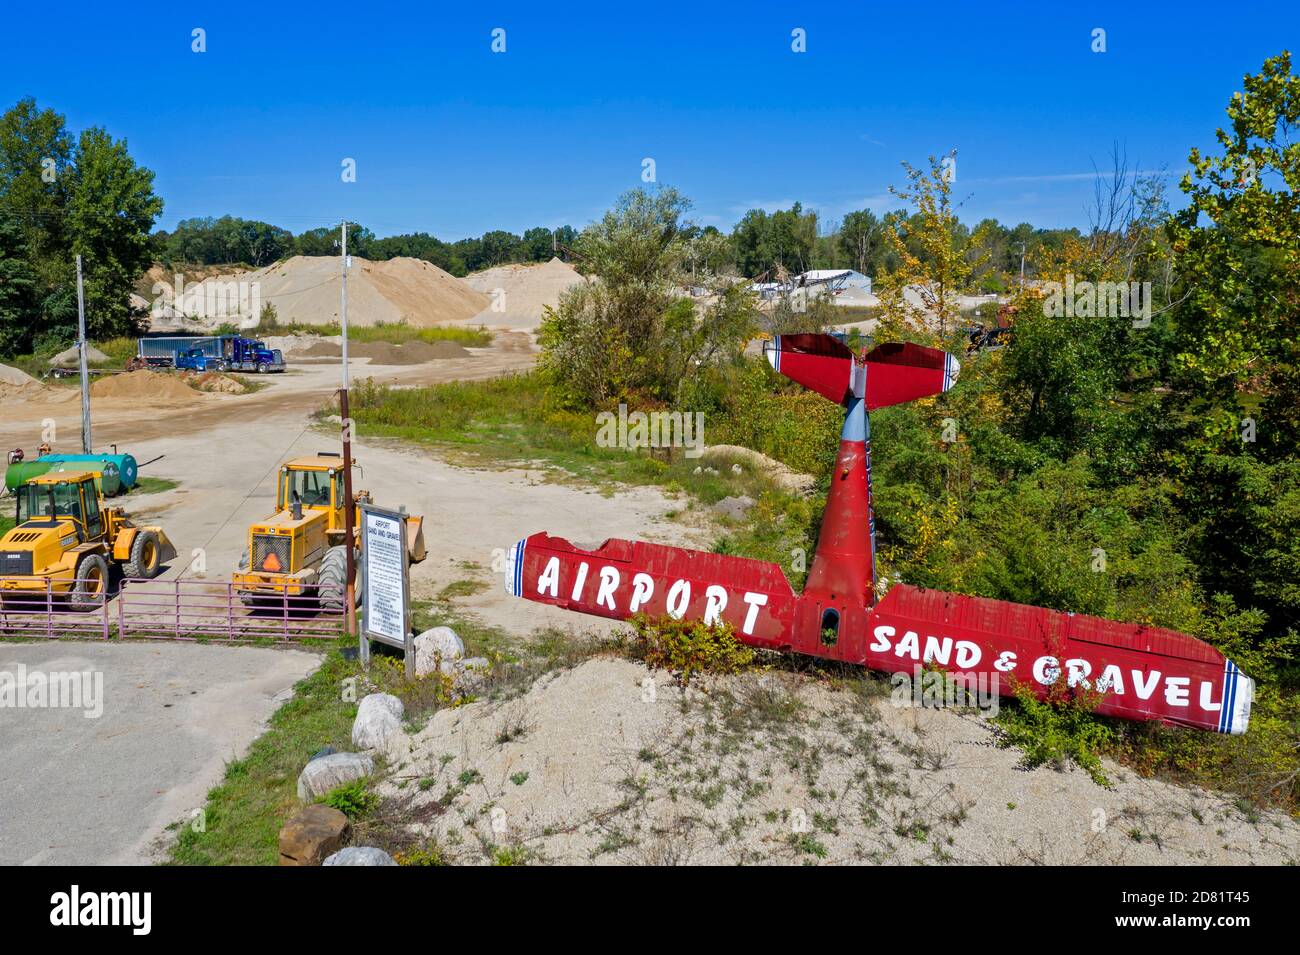 Hastings, Michigan - ein altes Flugzeug ist ein einzigartiges Zeichen für das Airport Sand & Gravel Geschäft. Stockfoto